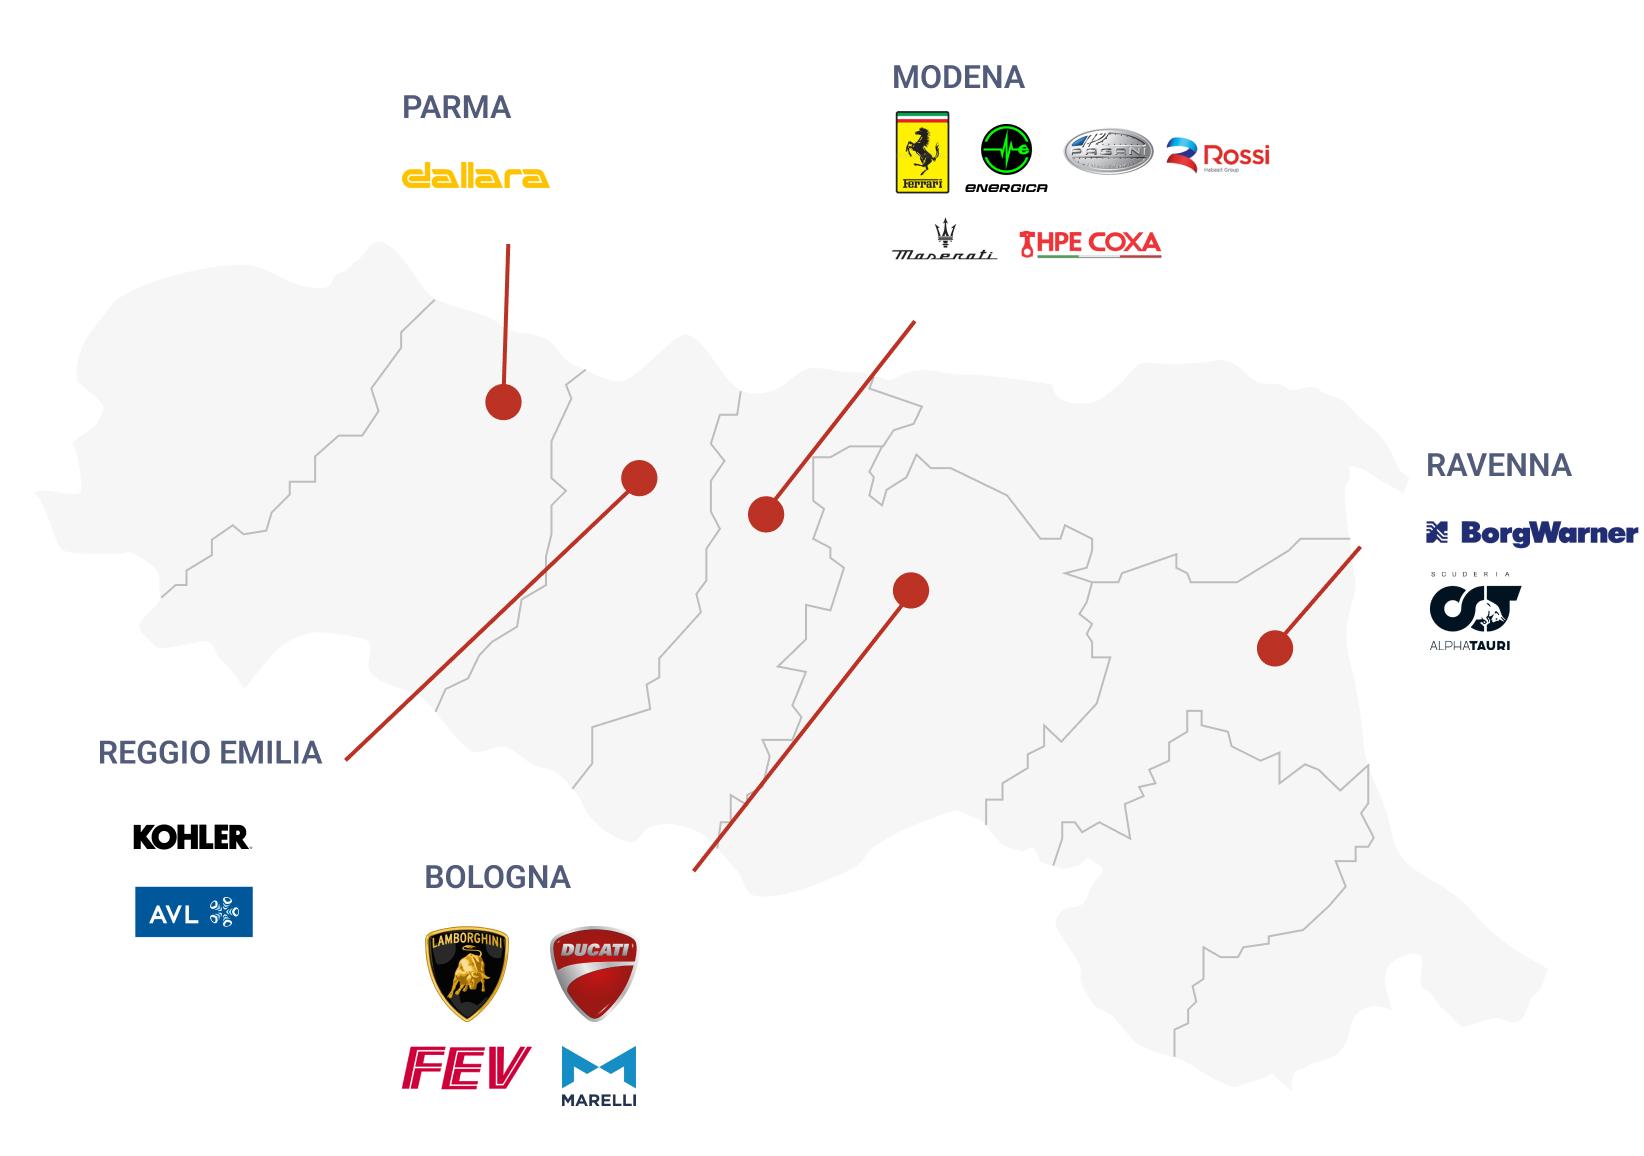 Motor Valley map with brands such as: Dallara, Ferrari, Energica, Maserati, Pagani, Rossi, Hpe Coxa, BorgWarner, Scuderia Alphatauri, Lamborghini, Ducati, Marelli, FEV, Kohler, AVL.